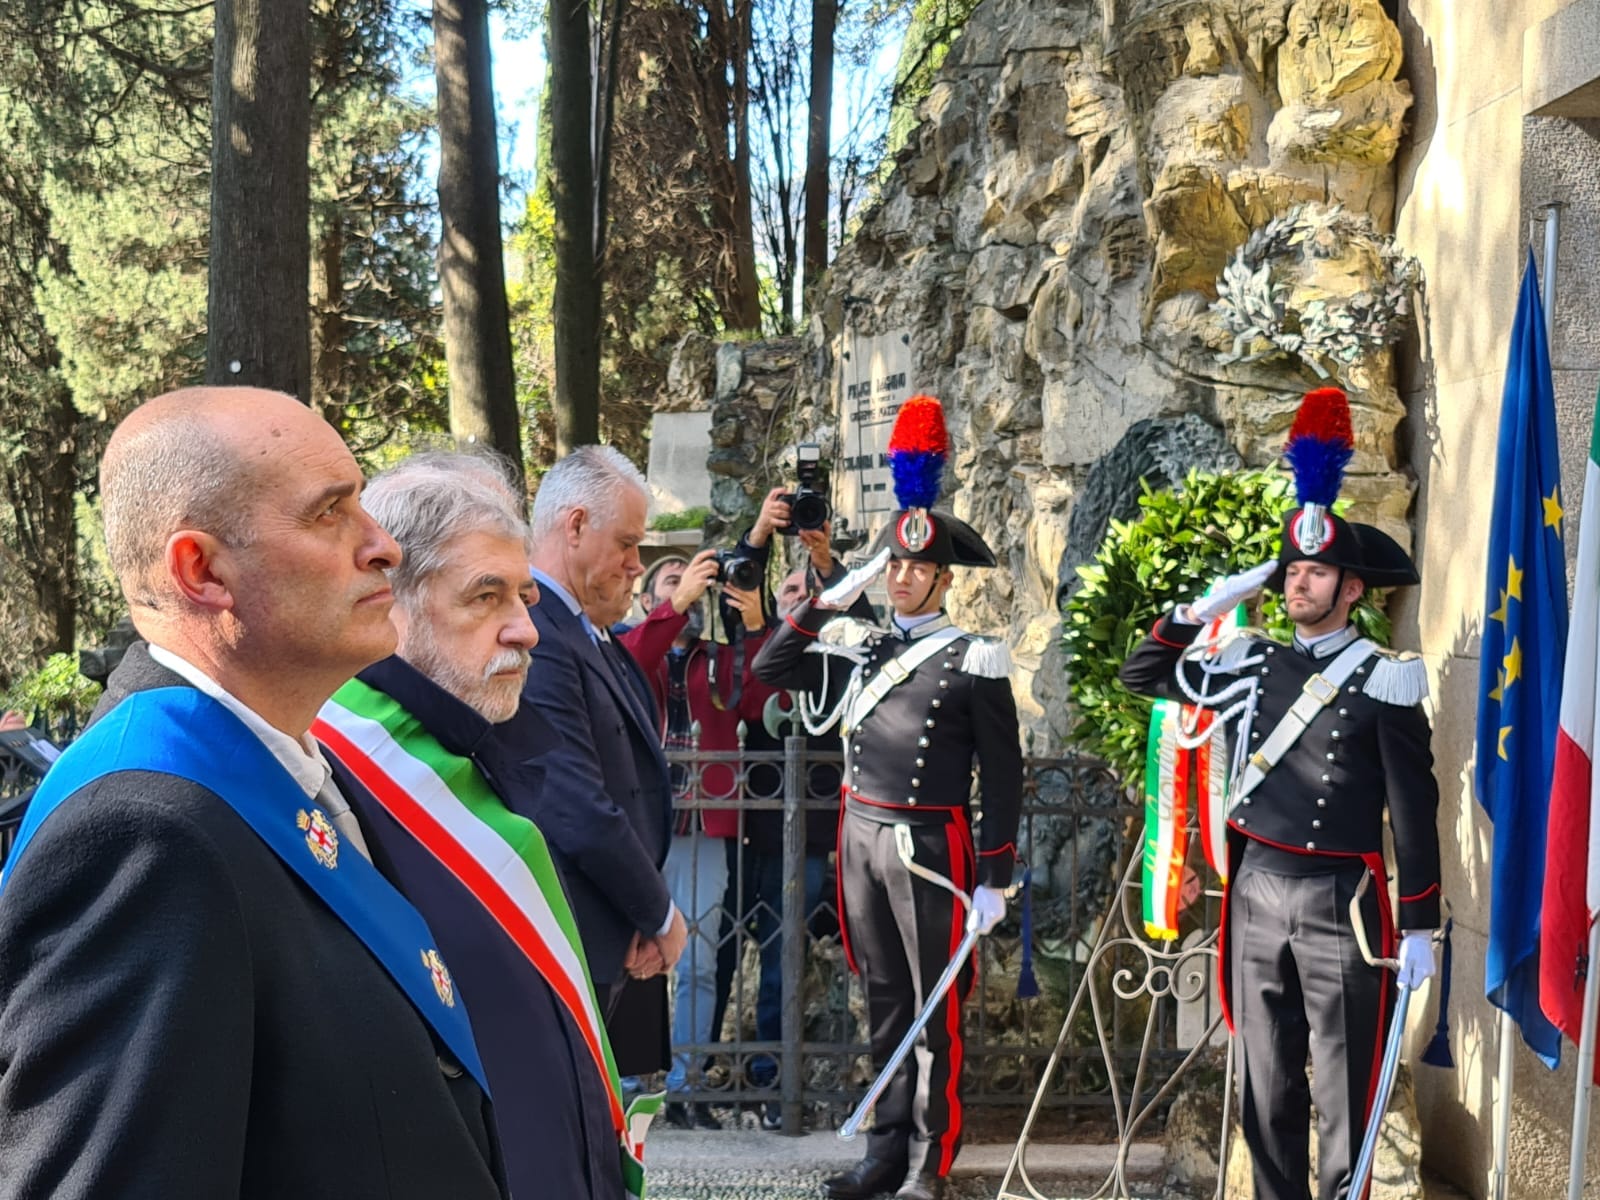 Genova, il ministro Zangrillo omaggia Mazzini nel giorno dell'Unità d'Italia: "Ci indica ancora oggi i valori della libertà e della democrazia"